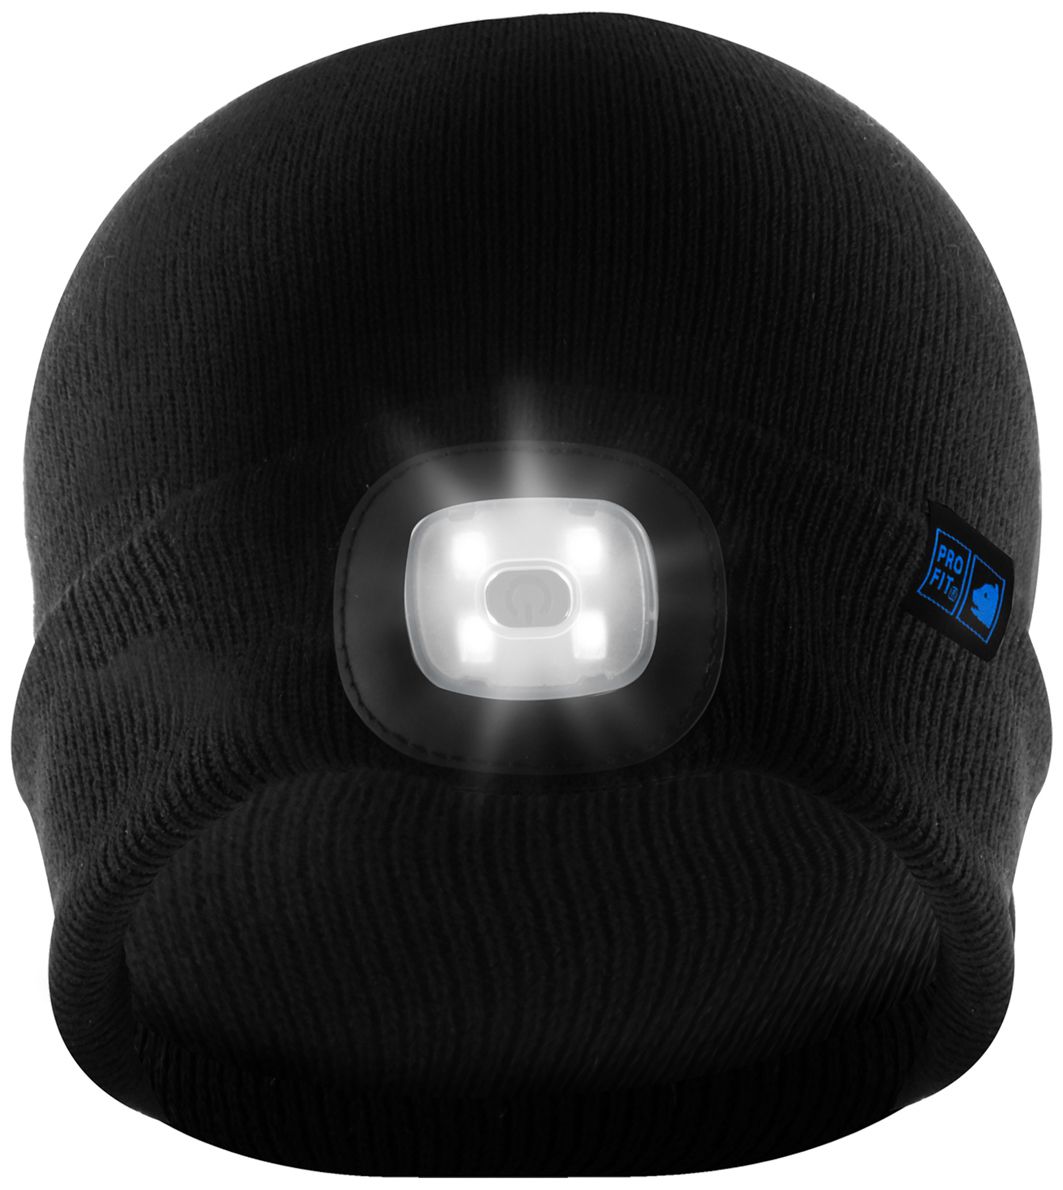 PRO FIT Winter-Mütze mit LED-Licht - Acryl-Strickmütze mit Lampe - wiederaufladbar - weich, warm & bequem - Schwarz